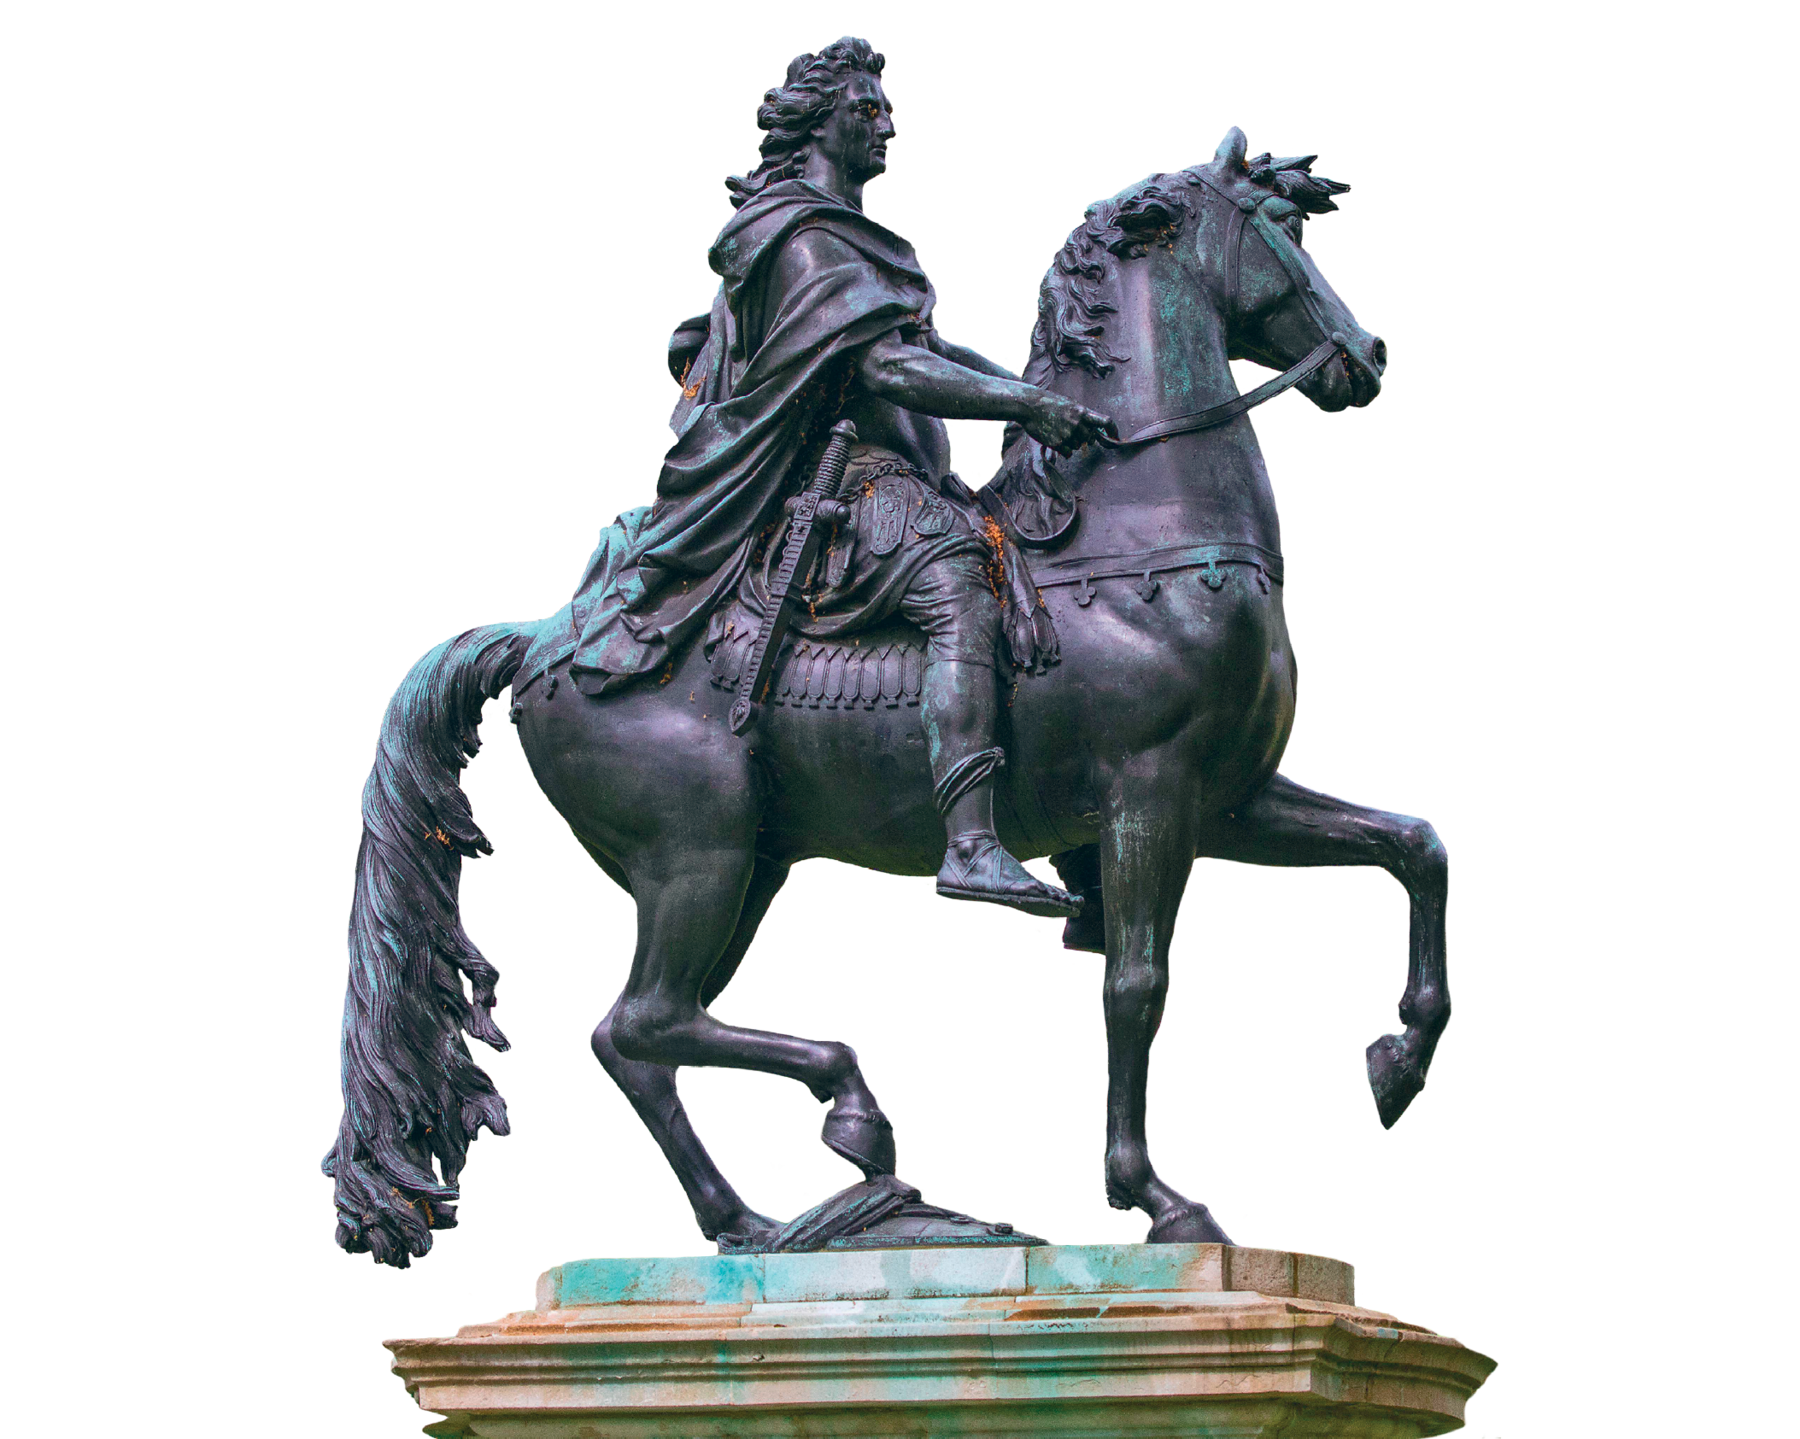 Estátua. Um homem de cabelo longo, um manto sobre a armadura, e espada na cintura montado sobre um cavalo, que tem uma das patas dianteiras elevadas. A estátua é escura, com manchas esverdeadas.